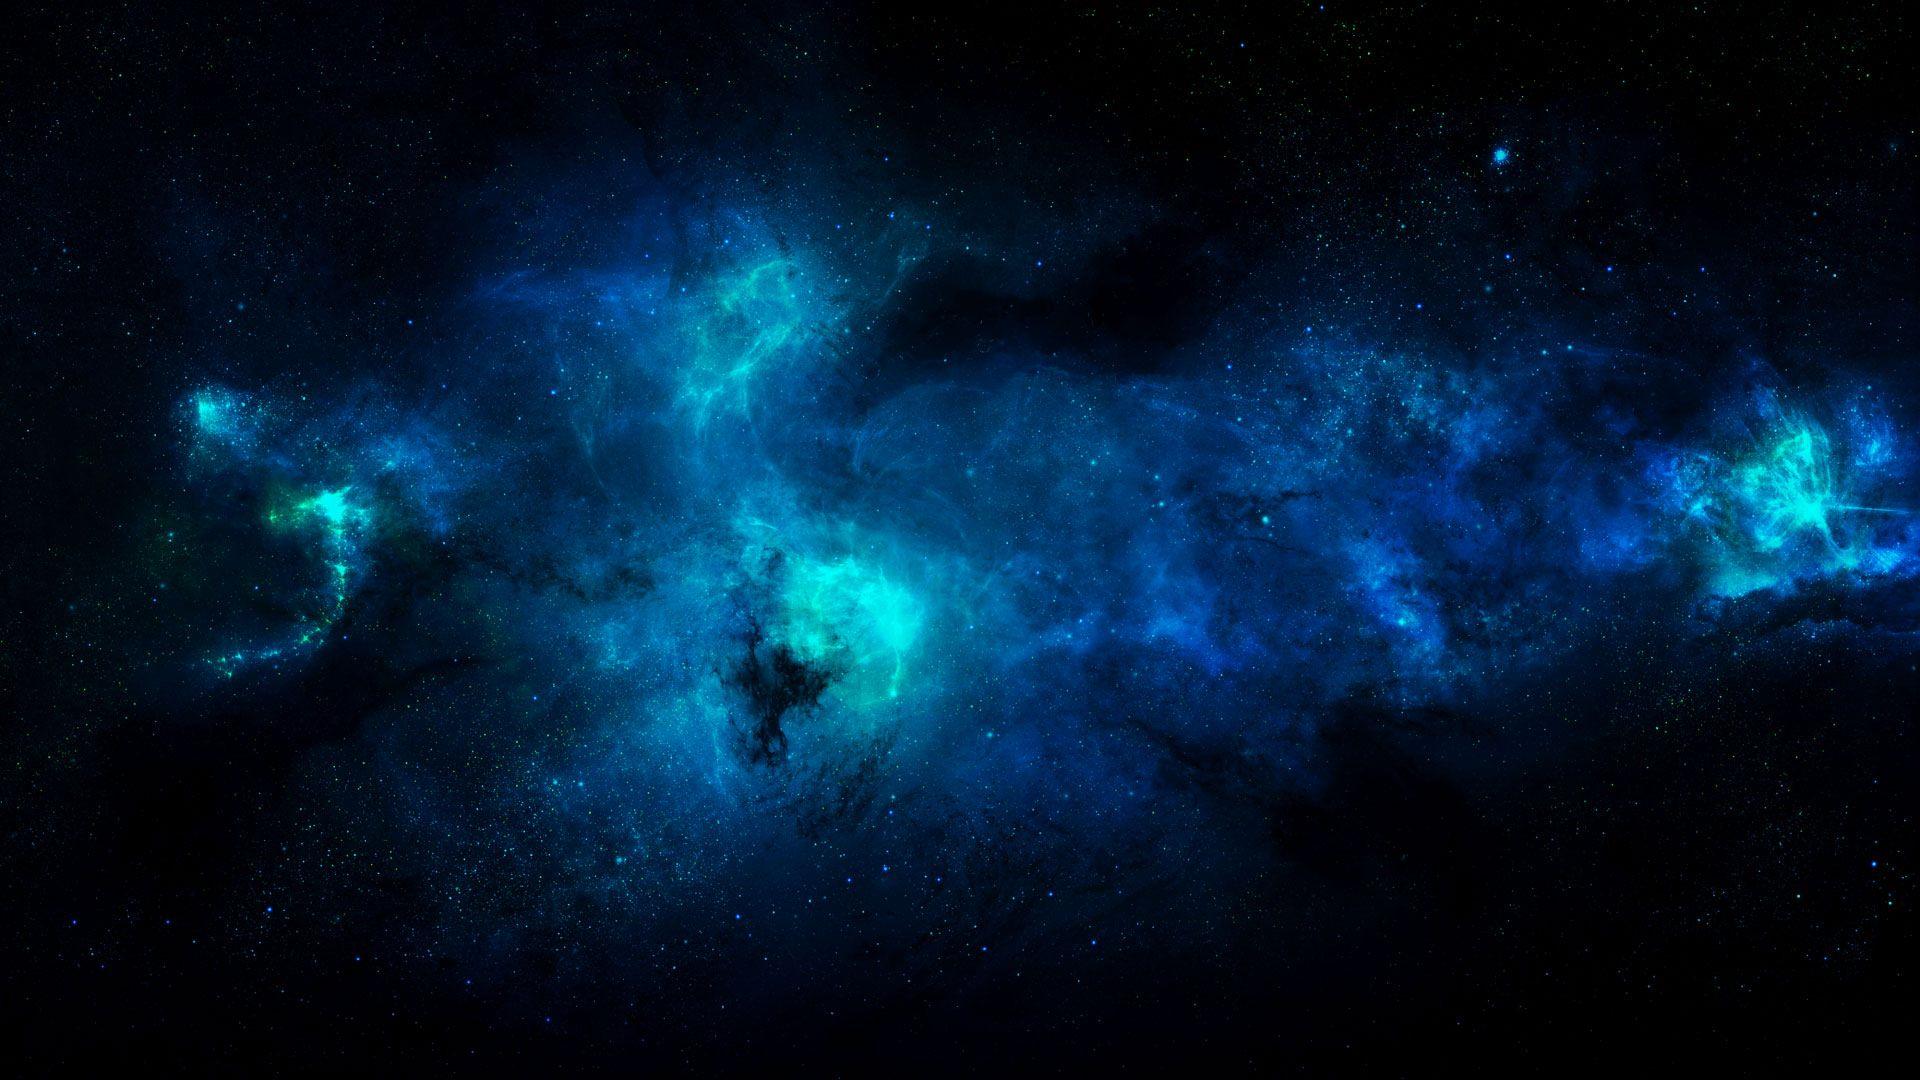 1080p nebula image. Nebula wallpaper, Blue galaxy wallpaper